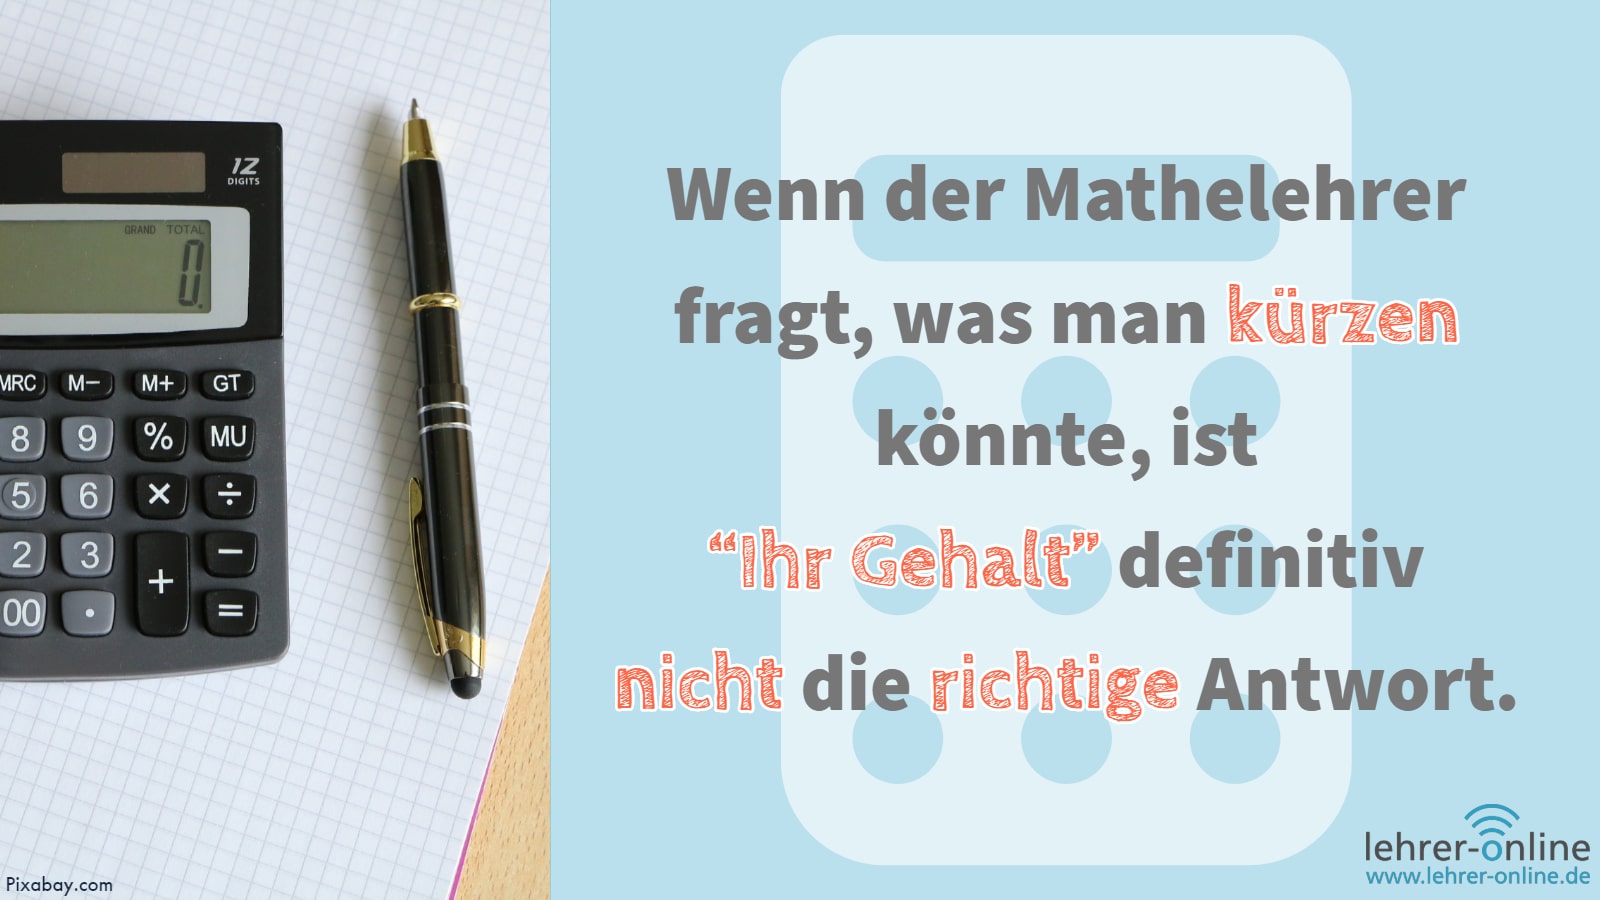 Taschenrechner und Stift liegen auf Papier; Wenn der Mathelehrer fragt, was man kürzen könnte, ist "ihr Gehalt" definitiv nicht die richtige Antwort.